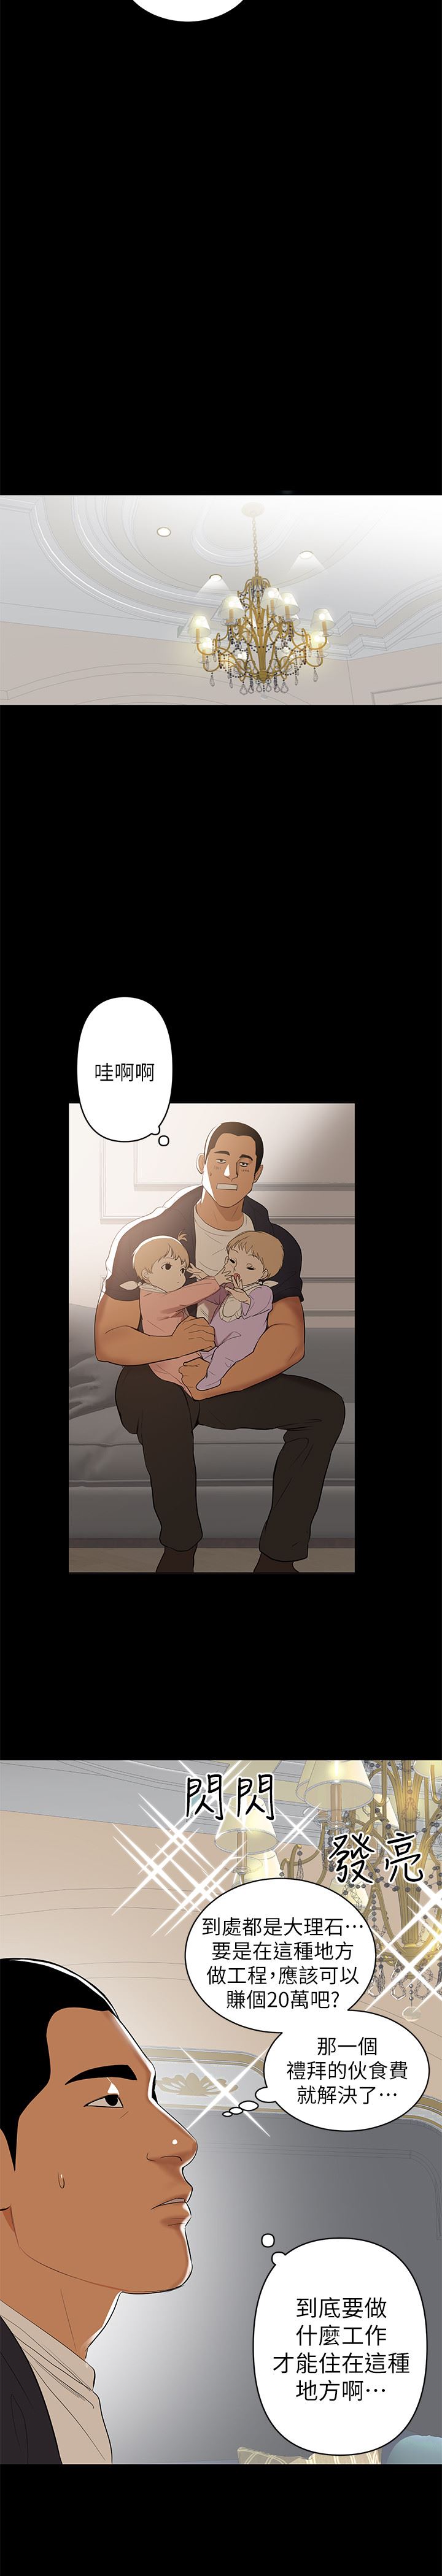 《兼职奶妈》漫画 第1话-购买母乳的单亲爸爸